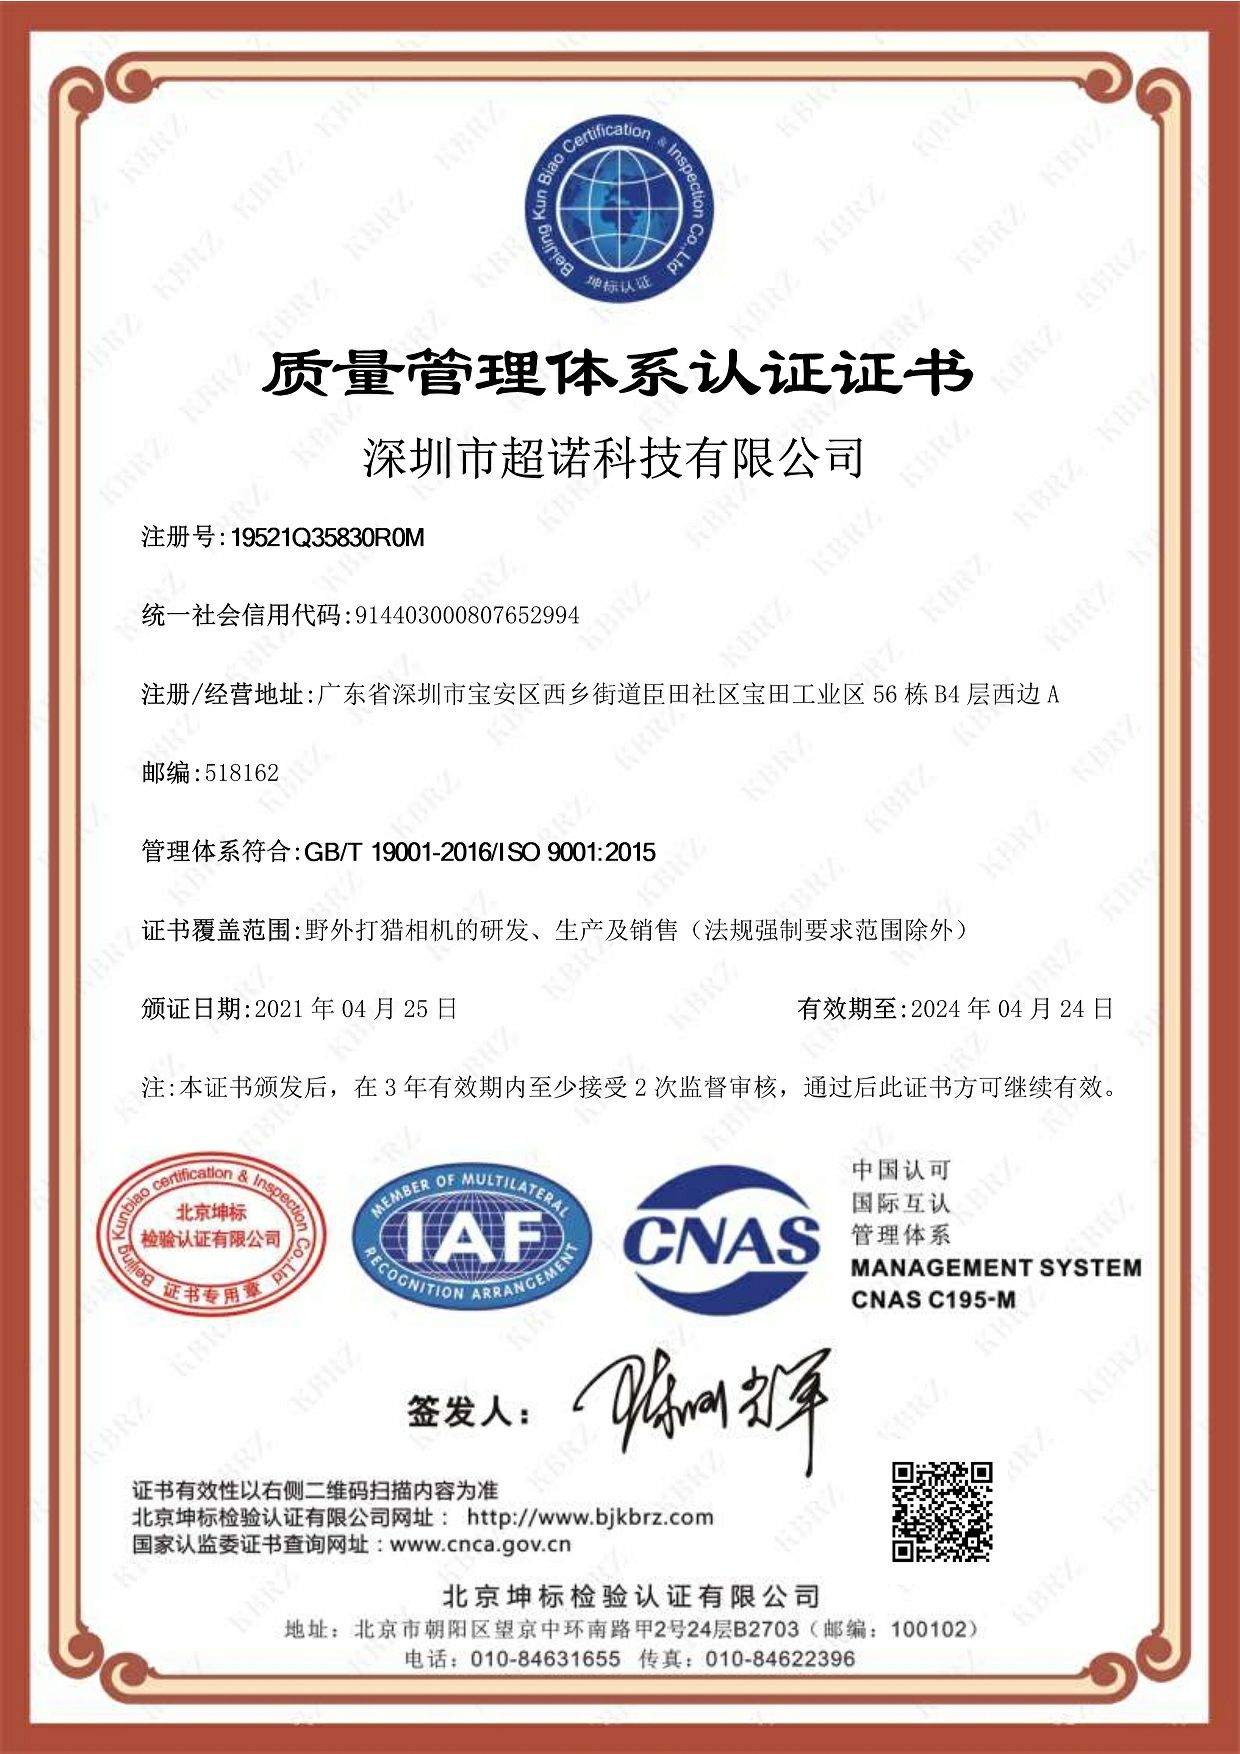 祝贺公司通过ISO 9001:2015质量体系认证